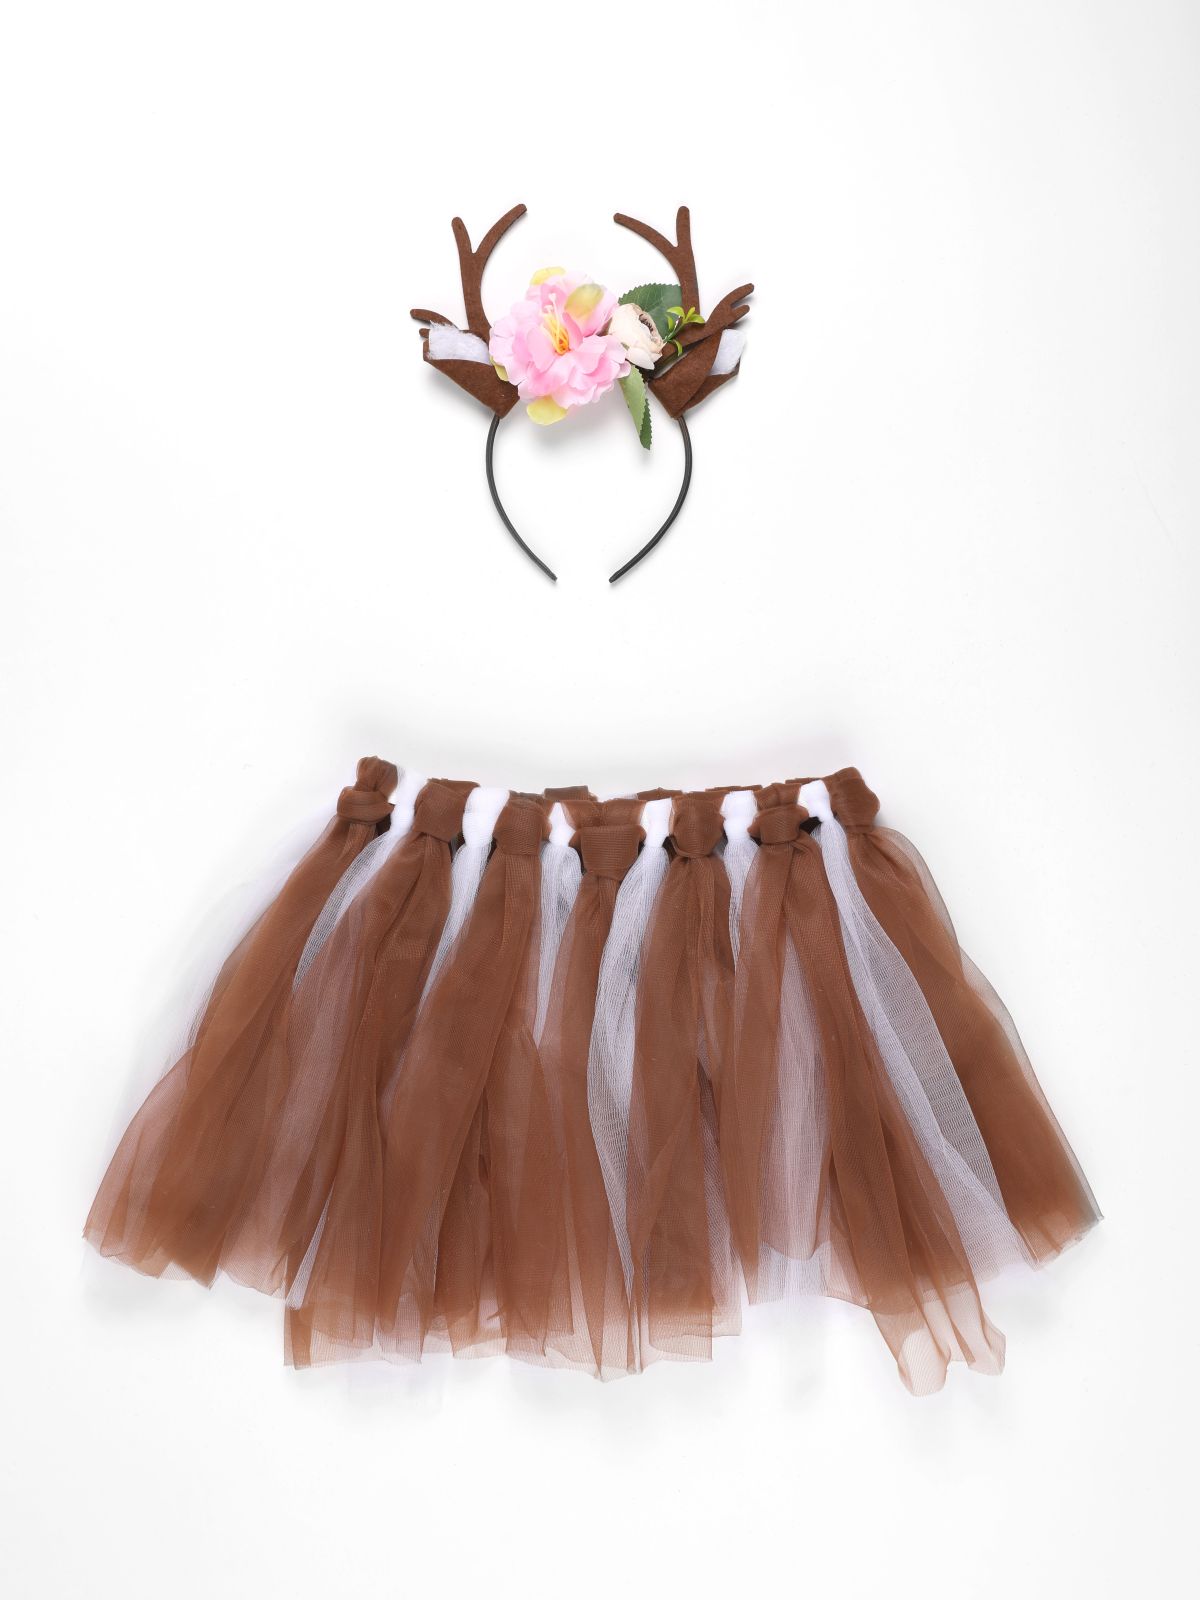  חצאית וקשת לתחפושת איילה / Purim Collection של SHOSHI ZOHAR